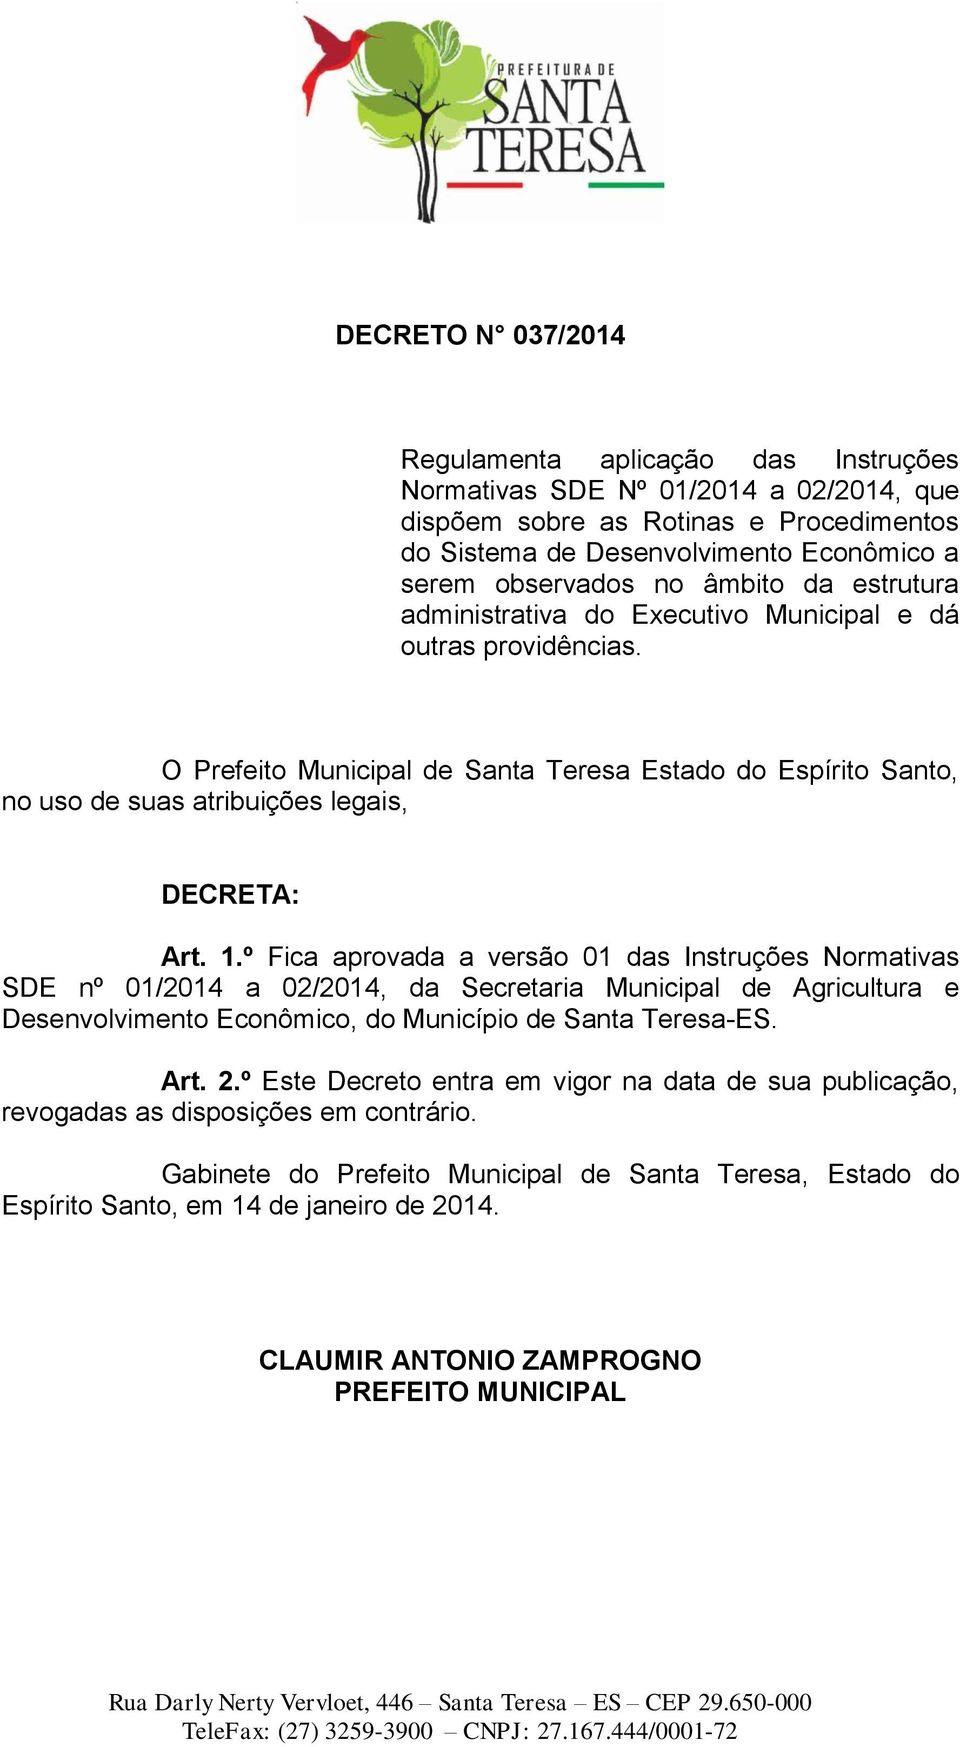 º Fica aprovada a versão 01 das Instruções Normativas SDE nº 01/2014 a 02/2014, da Secretaria Municipal de Agricultura e Desenvolvimento Econômico, do Município de Santa Teresa-ES. Art. 2.